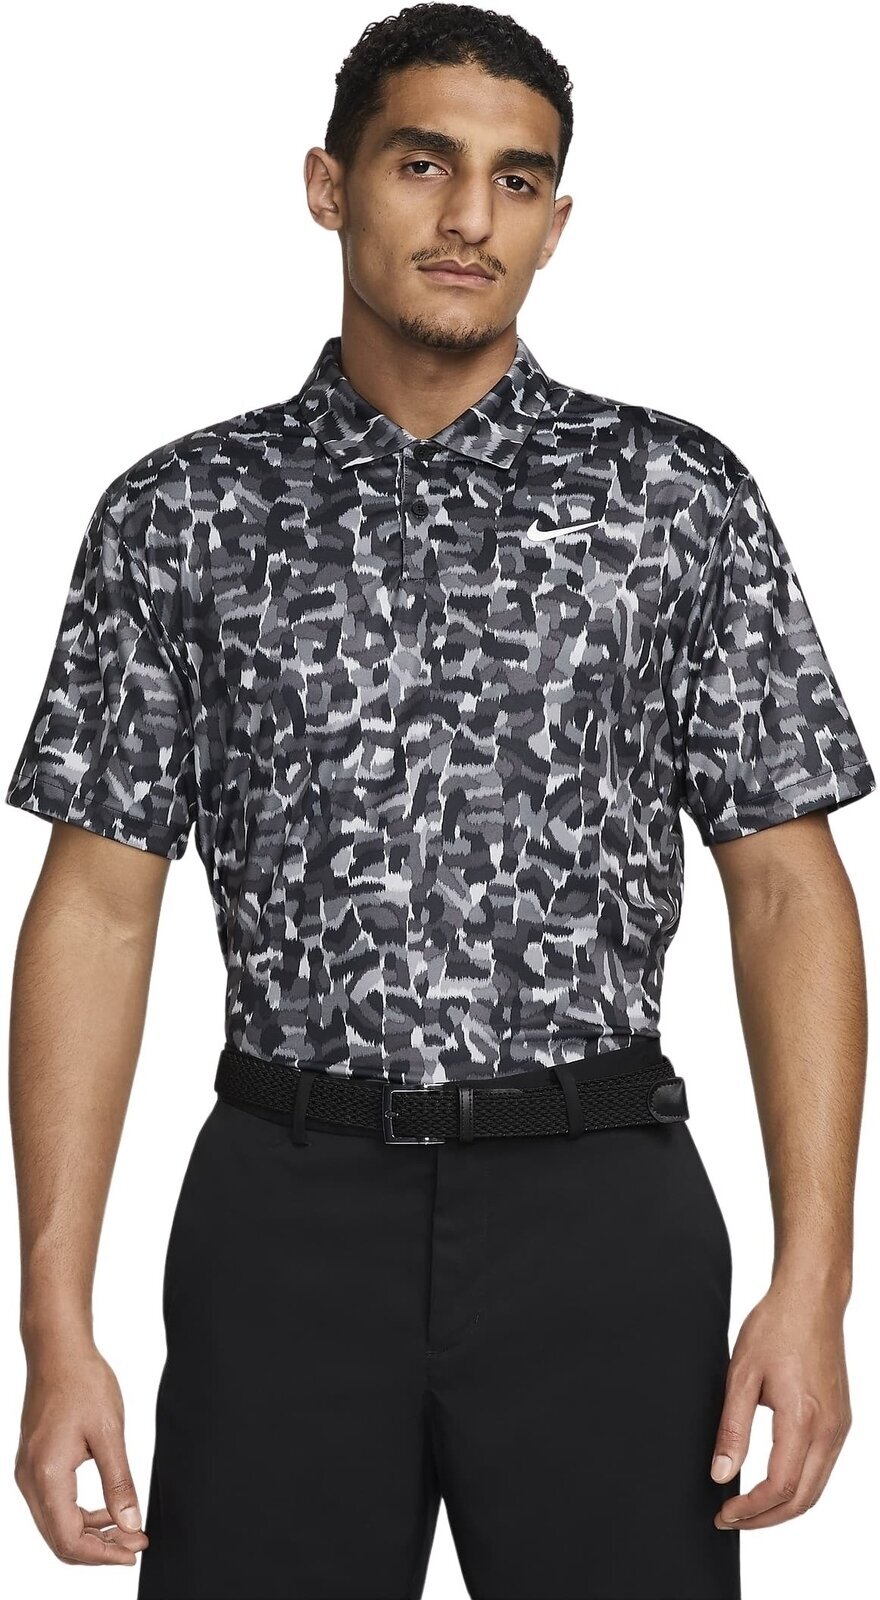 Polo Shirt Nike Dri-Fit Tour Confetti Print Mens Polo Light Smoke Grey/White L Polo Shirt